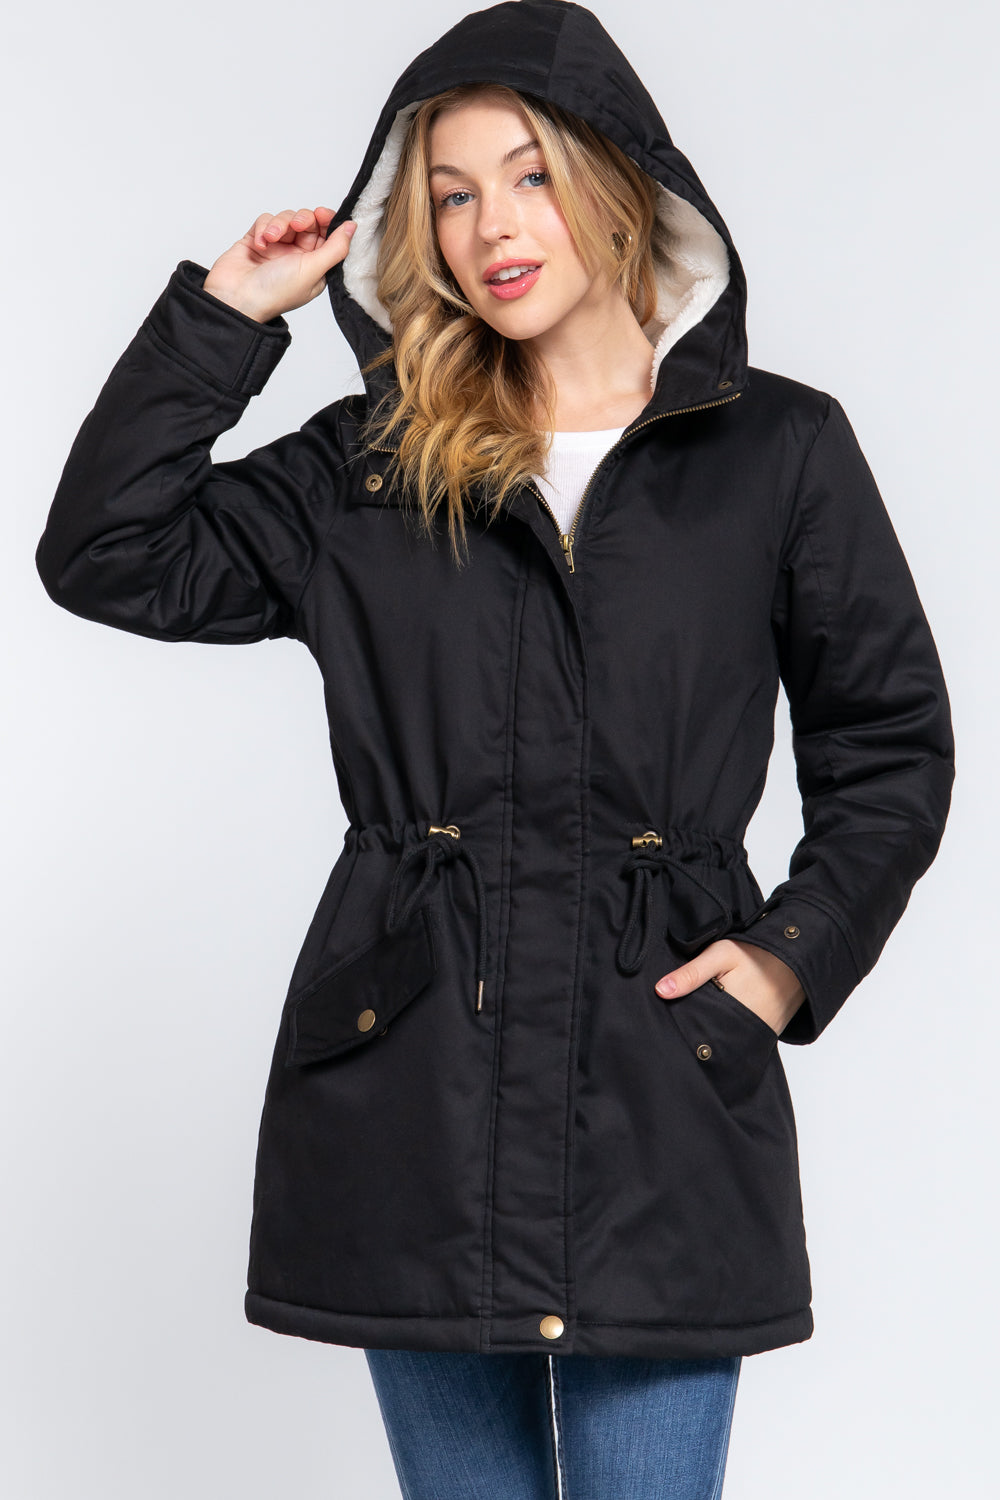 FZ Women's Fleece Lined Fur Hoodie Utility Jacket - FZwear